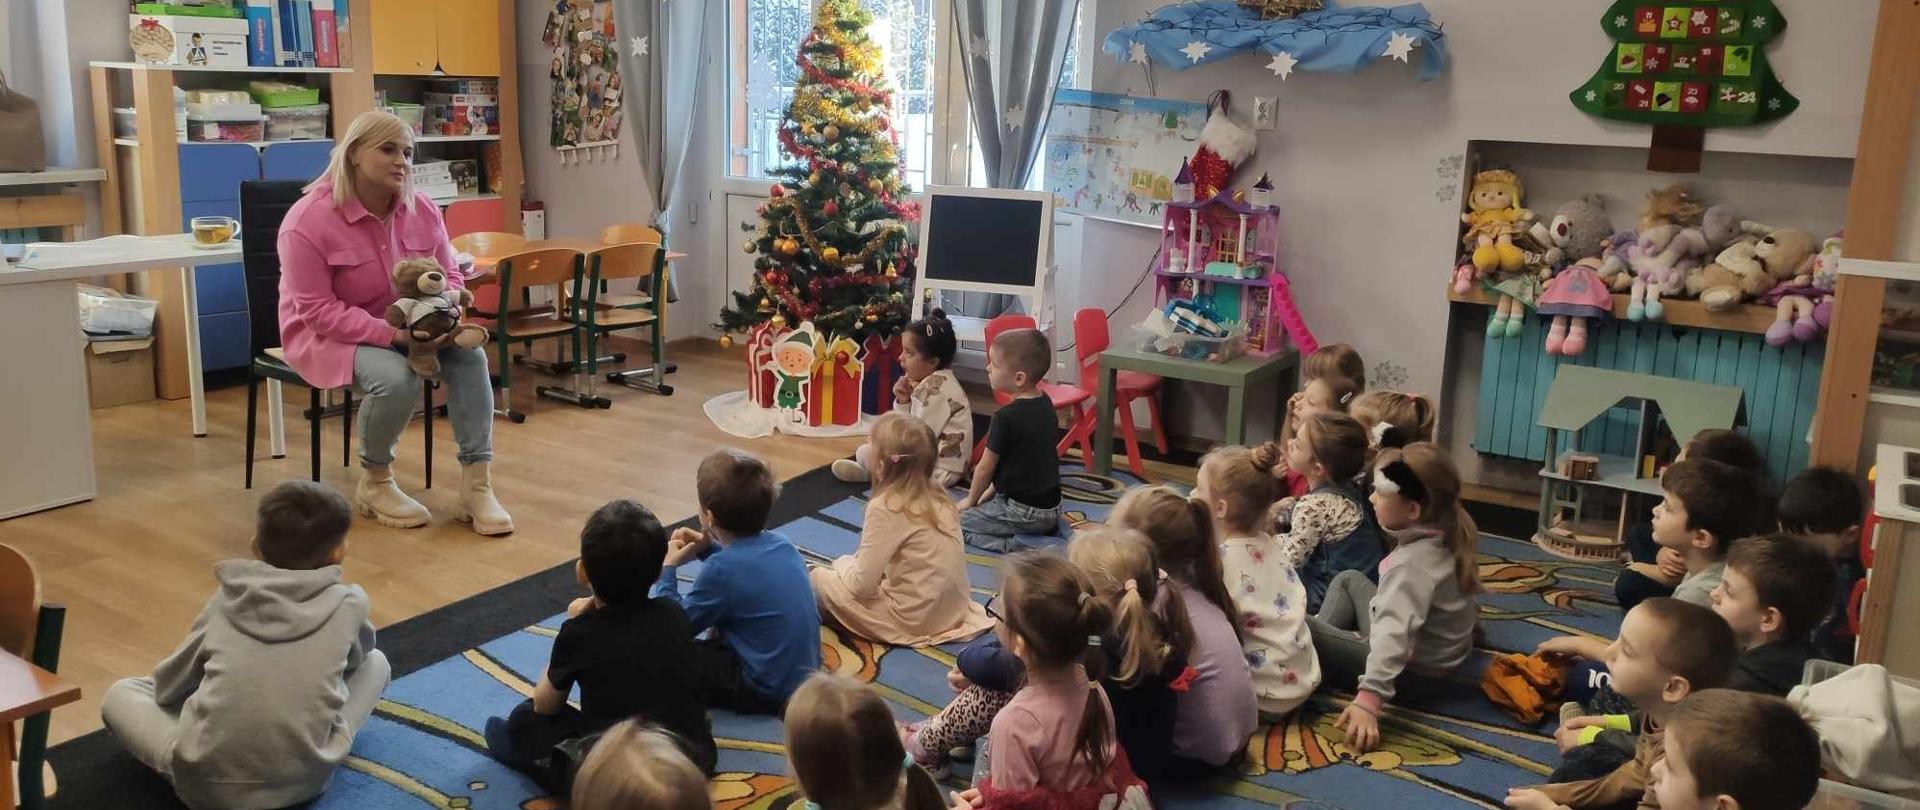 Zajęcia edukacyjne dla dzieci w Miejskim Przedszkolu nr 29 w Bytomiu